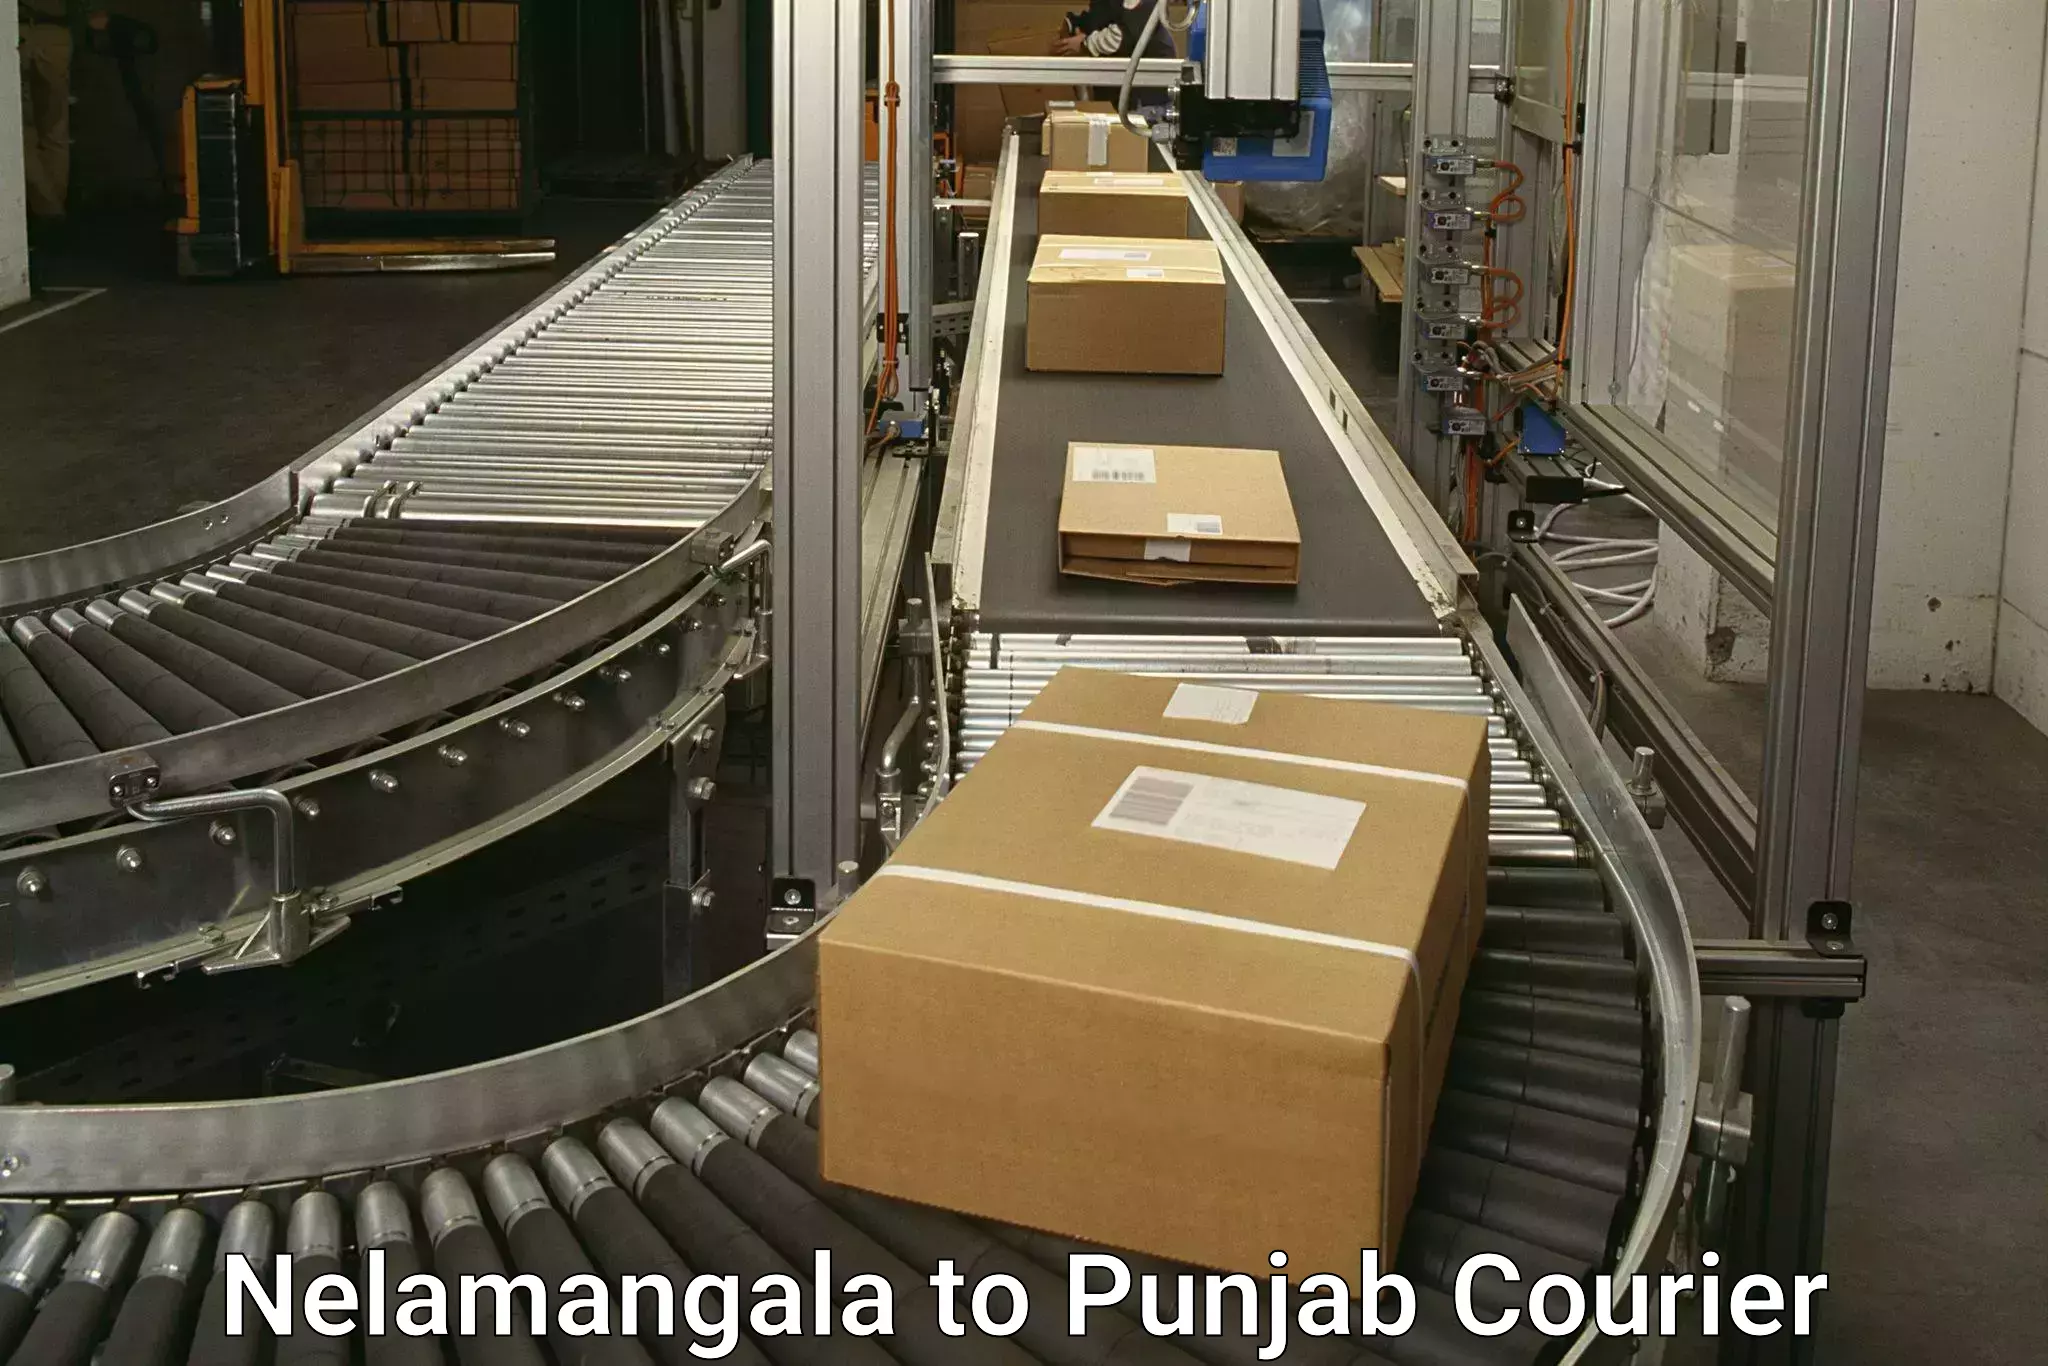 International courier rates Nelamangala to Punjab